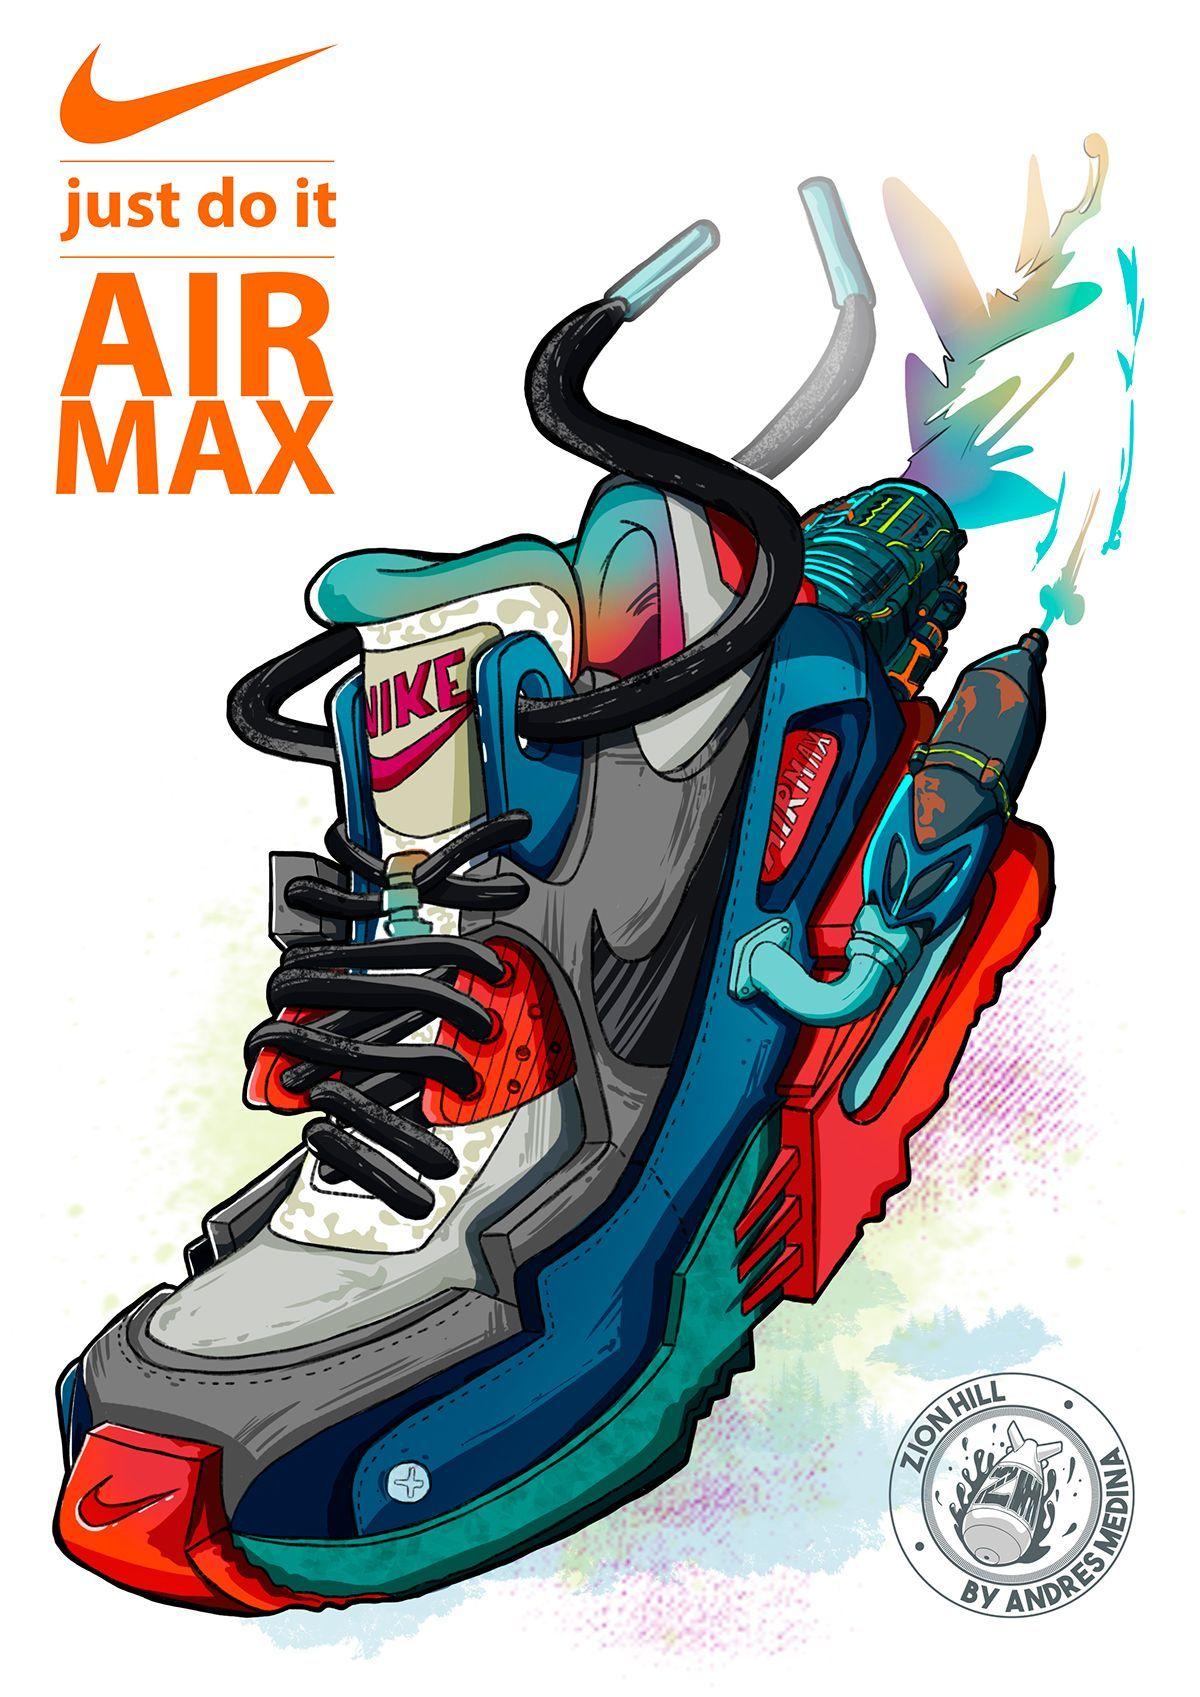 NIKE AIRMAX. Sneaker art, Sneakers wallpaper